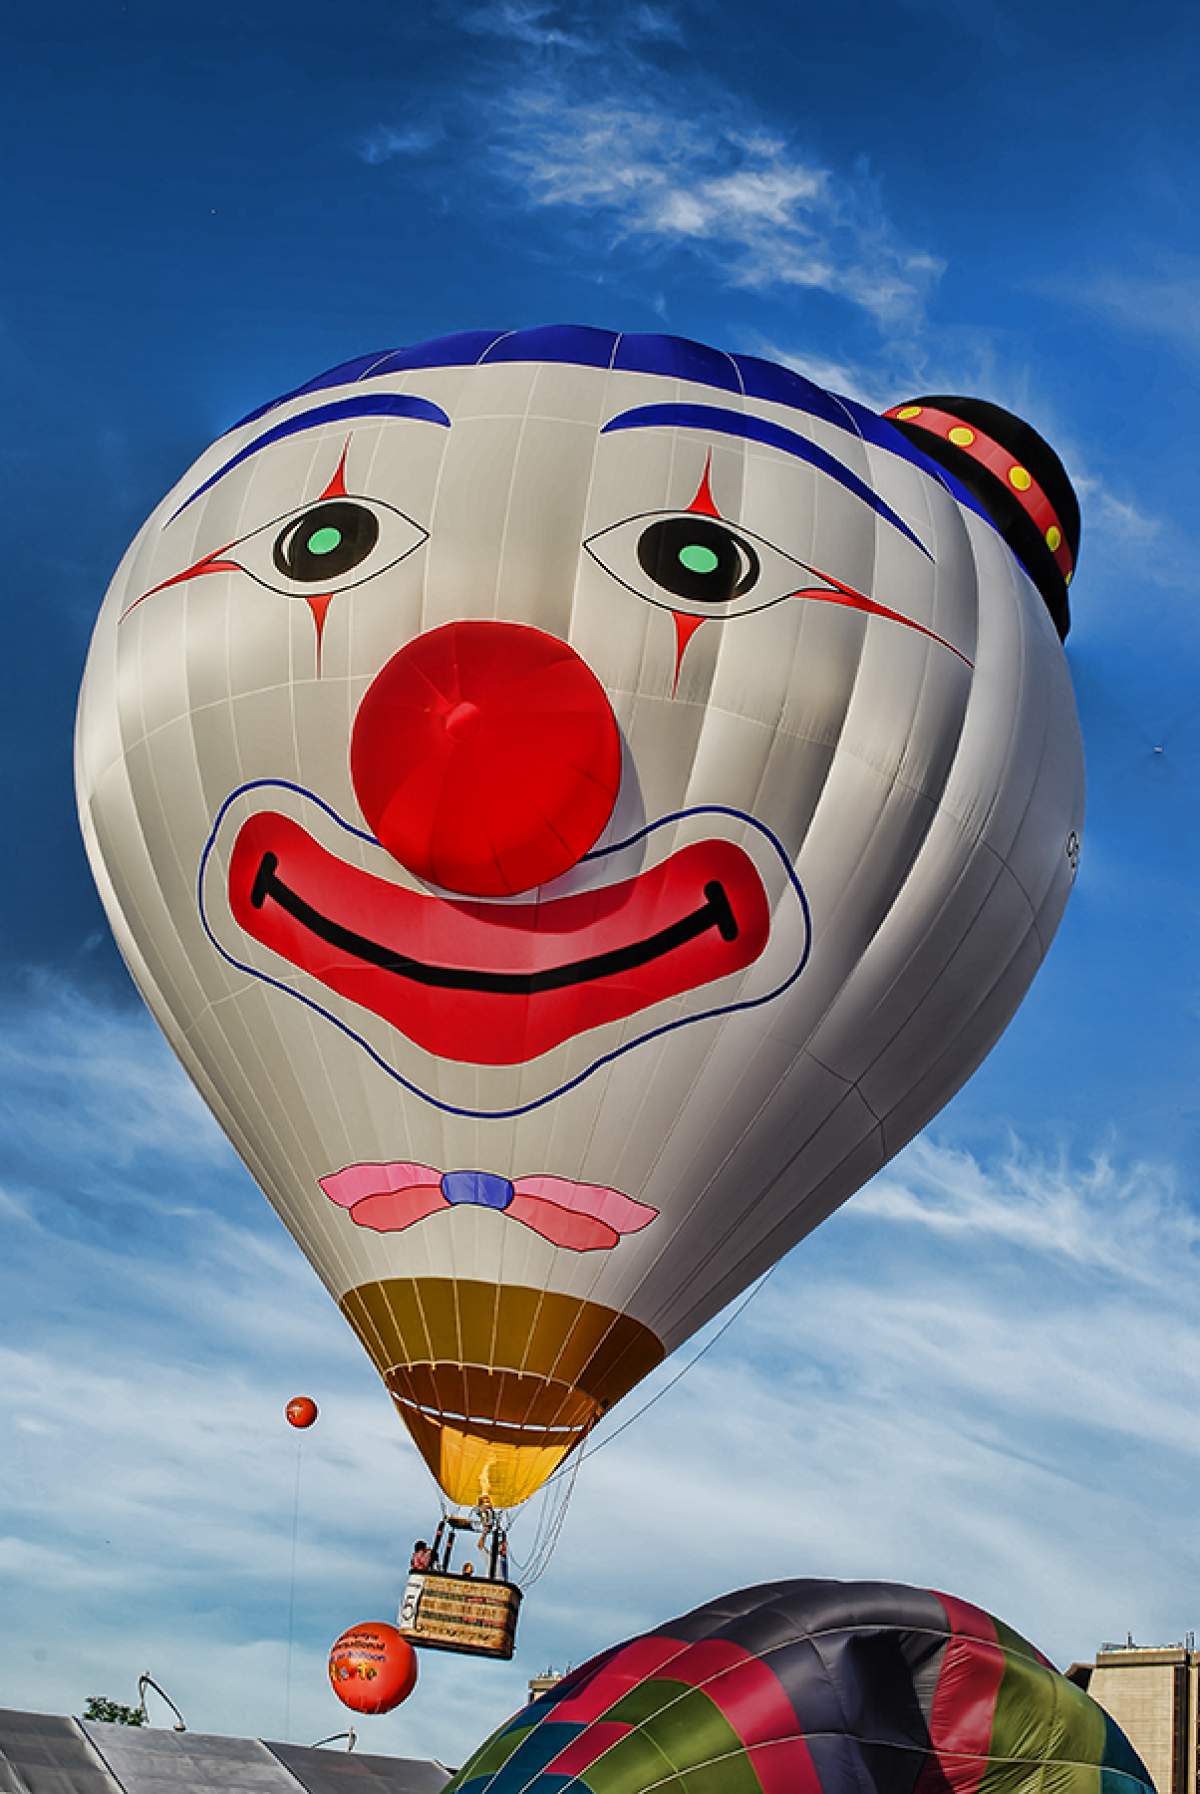 A smiling clown shaped hot air balloon